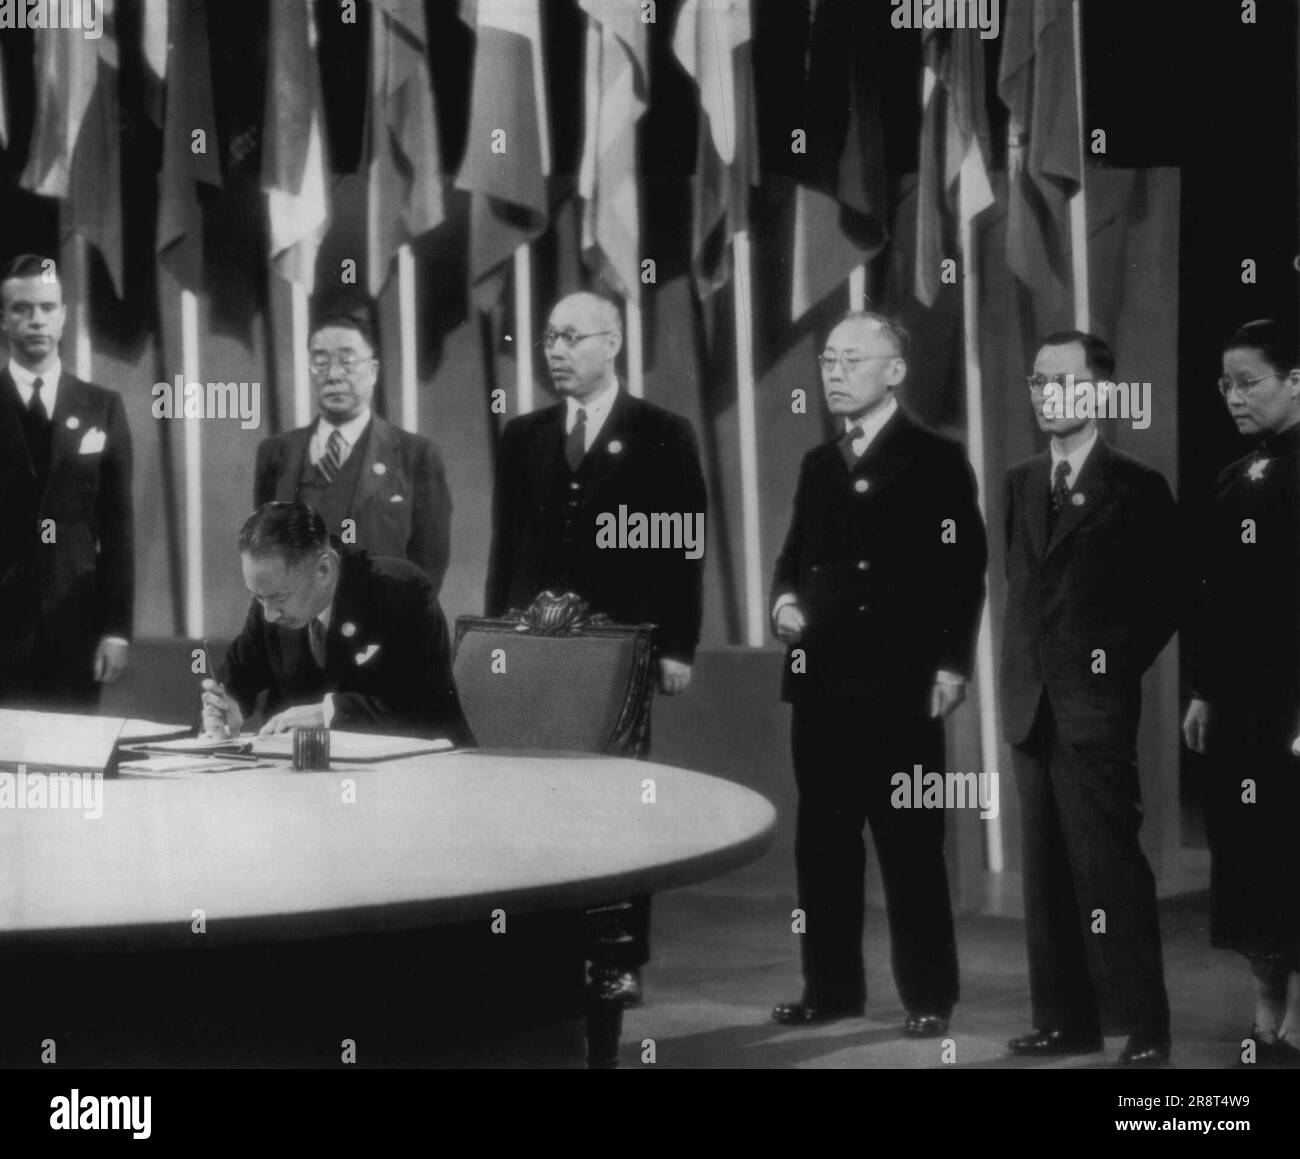 La Cina firmano per prima il Capitolo -- V.K. Wellington Koo, ambasciatore cinese alla corte di St James, (seduto) è il primo a firmare il capitolo di sicurezza delle Nazioni Unite, in piedi dietro, (L-R) sono: Parker Hart, dipartimento di stato degli Stati Uniti Hu Lin, Tune Pi-wu, Chun-mai Carson cambio, li Hwang, e Miss Wu-fang, Membri delle delegazioni cinesi. Giugno 26, 1945. (Foto di AP Wirephoto). Foto Stock